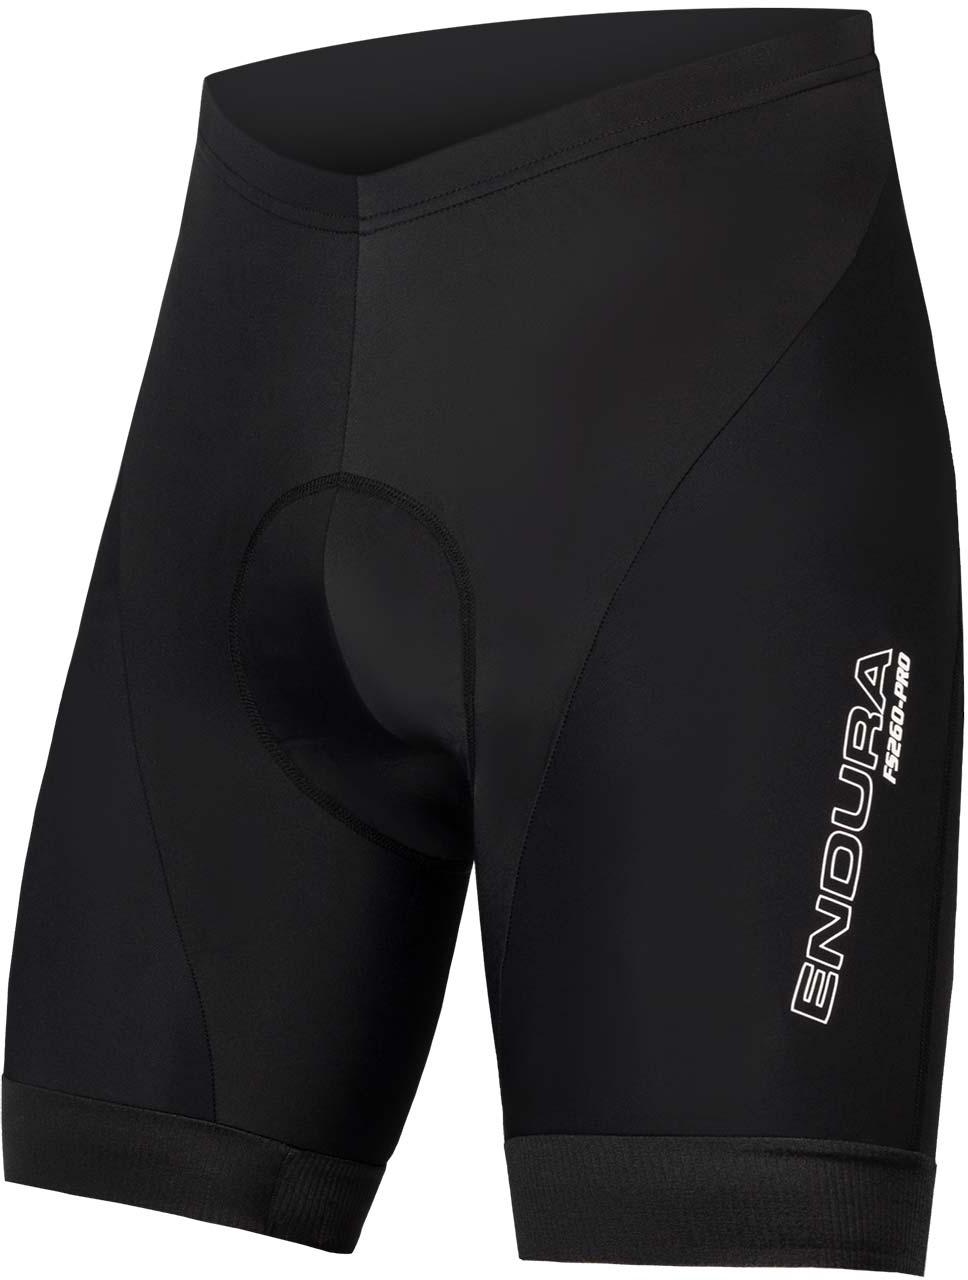 Endura  Fs260 Pro Cycling Shorts - Black